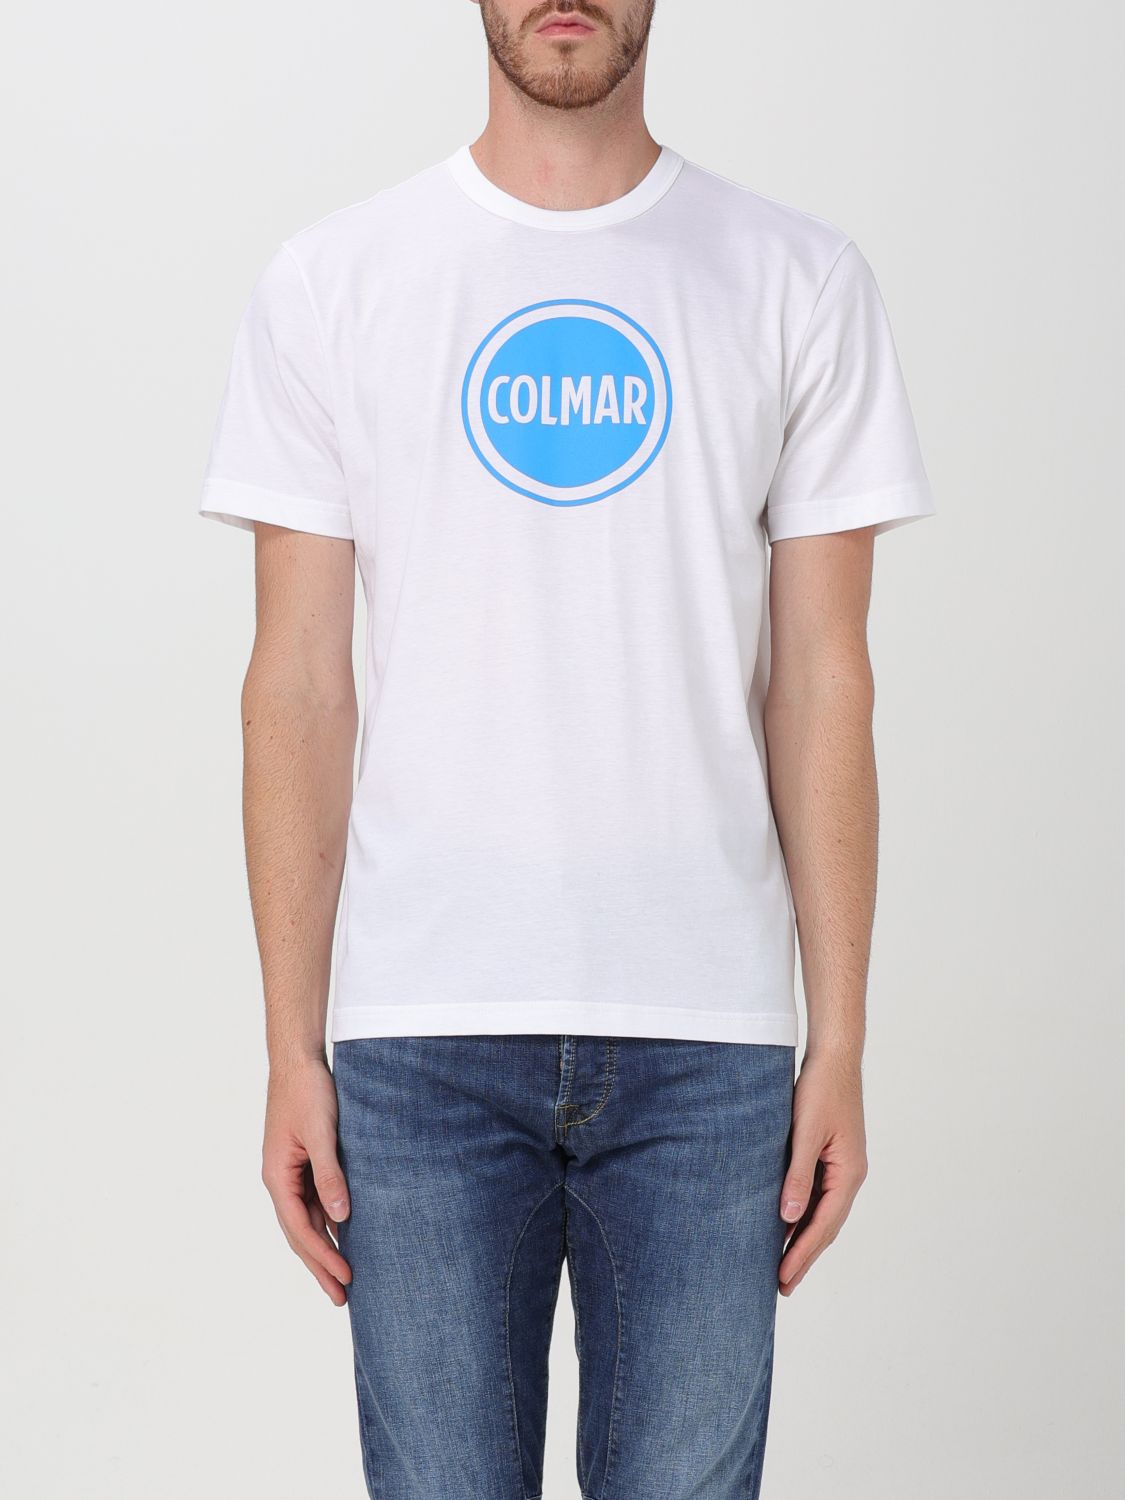 Colmar T-Shirt COLMAR Men color White